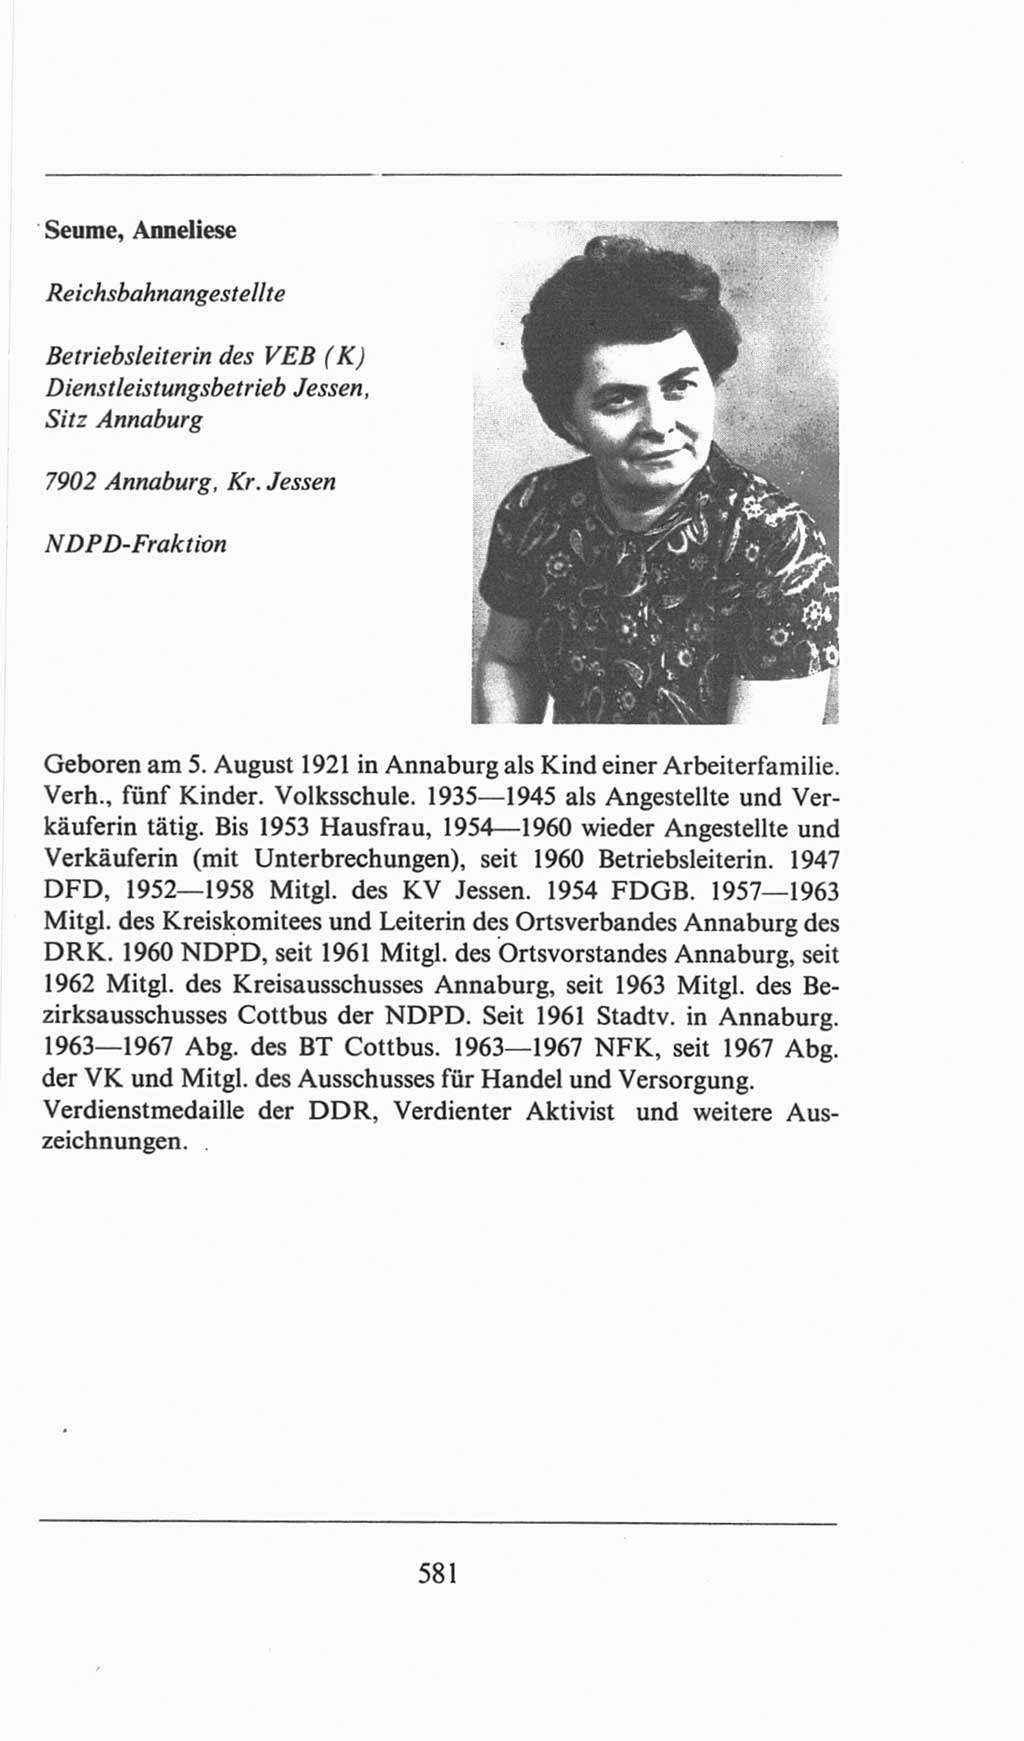 Volkskammer (VK) der Deutschen Demokratischen Republik (DDR), 6. Wahlperiode 1971-1976, Seite 581 (VK. DDR 6. WP. 1971-1976, S. 581)